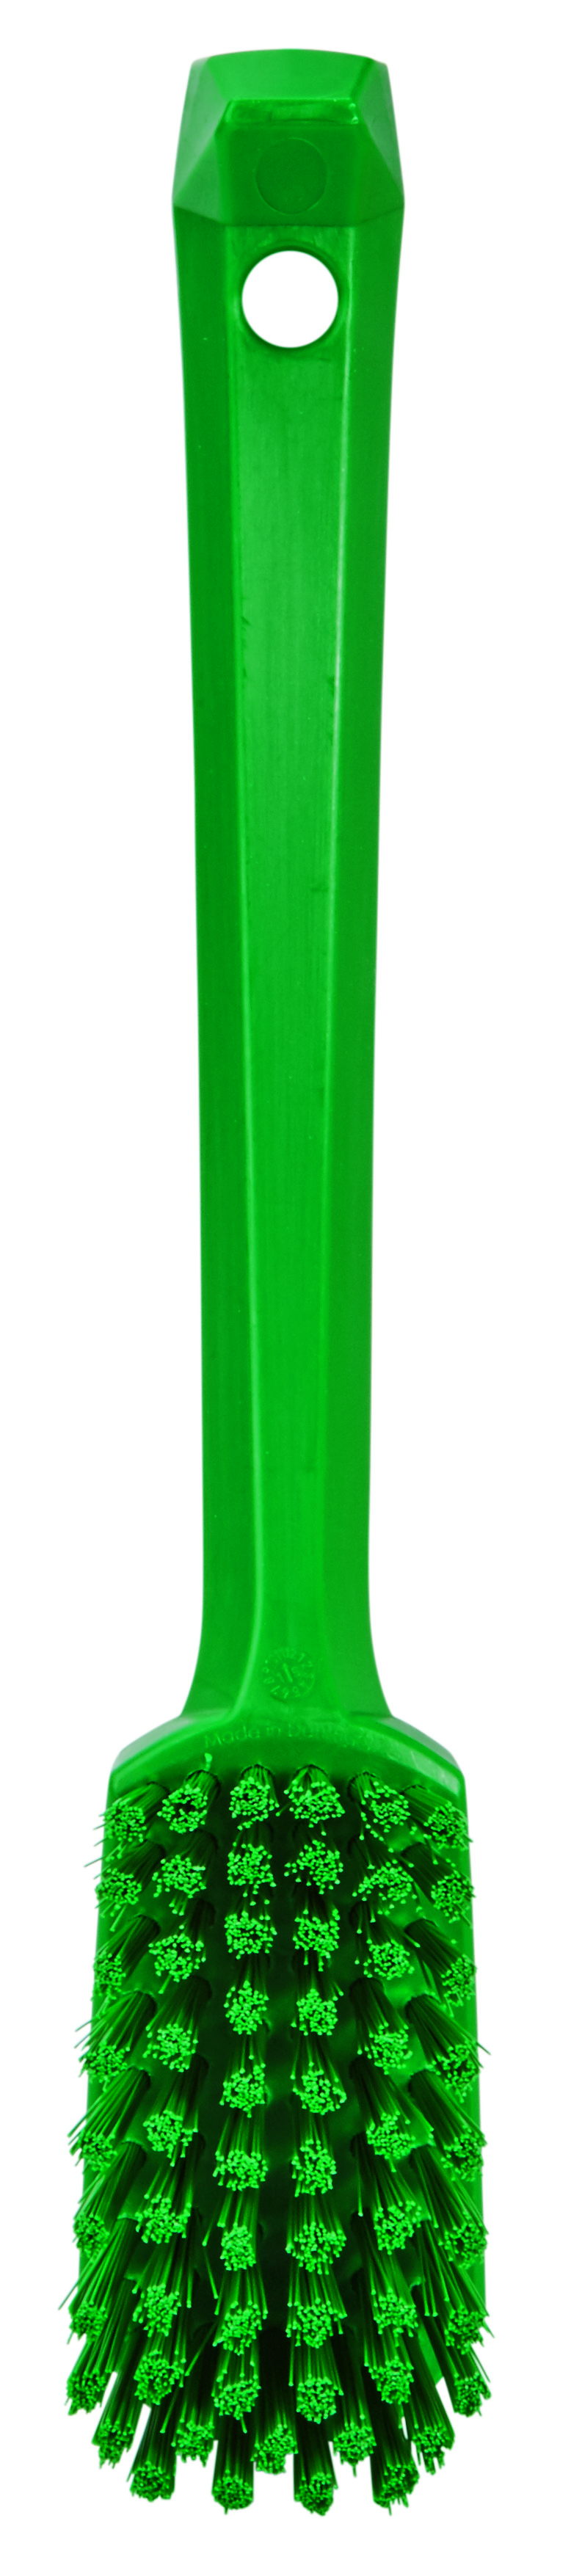 Щетка Vikan универсальная с изогнутой ручкой, 260 мм, средняя жесткость, зеленая